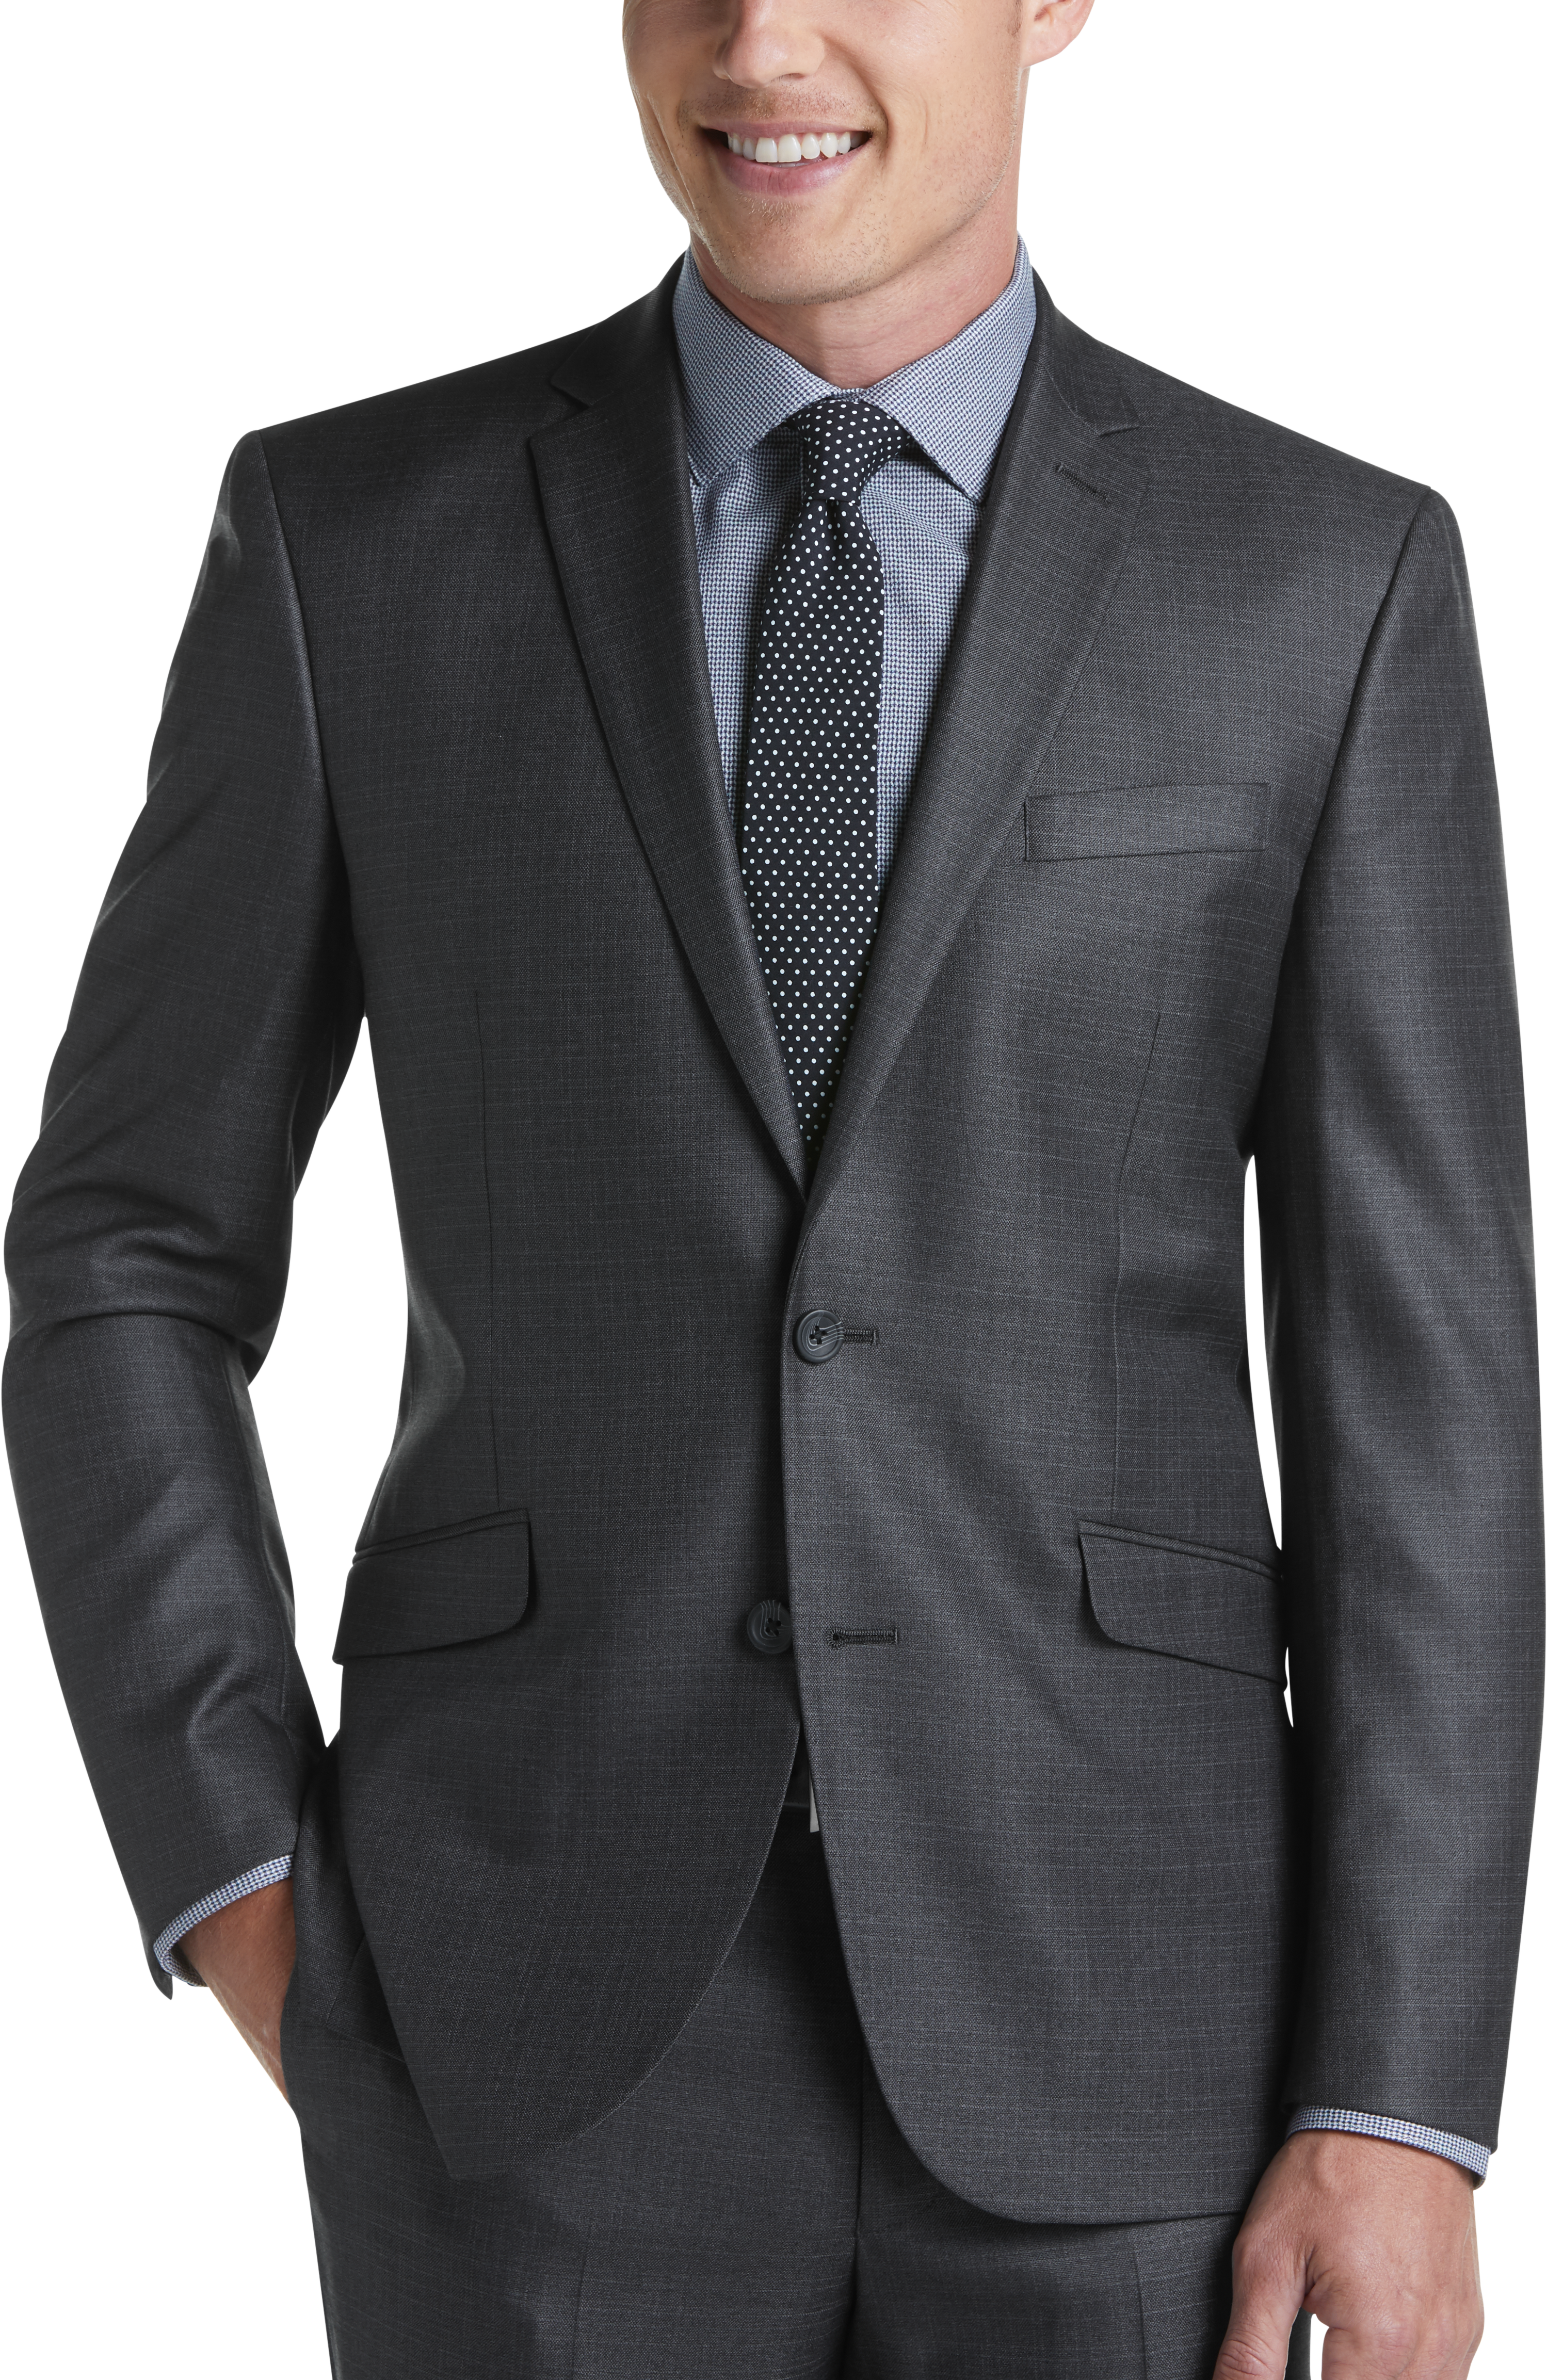 Kenneth Cole Reaction TECHNI-COLE Charcoal Slim Fit Suit - Men's Suits ...